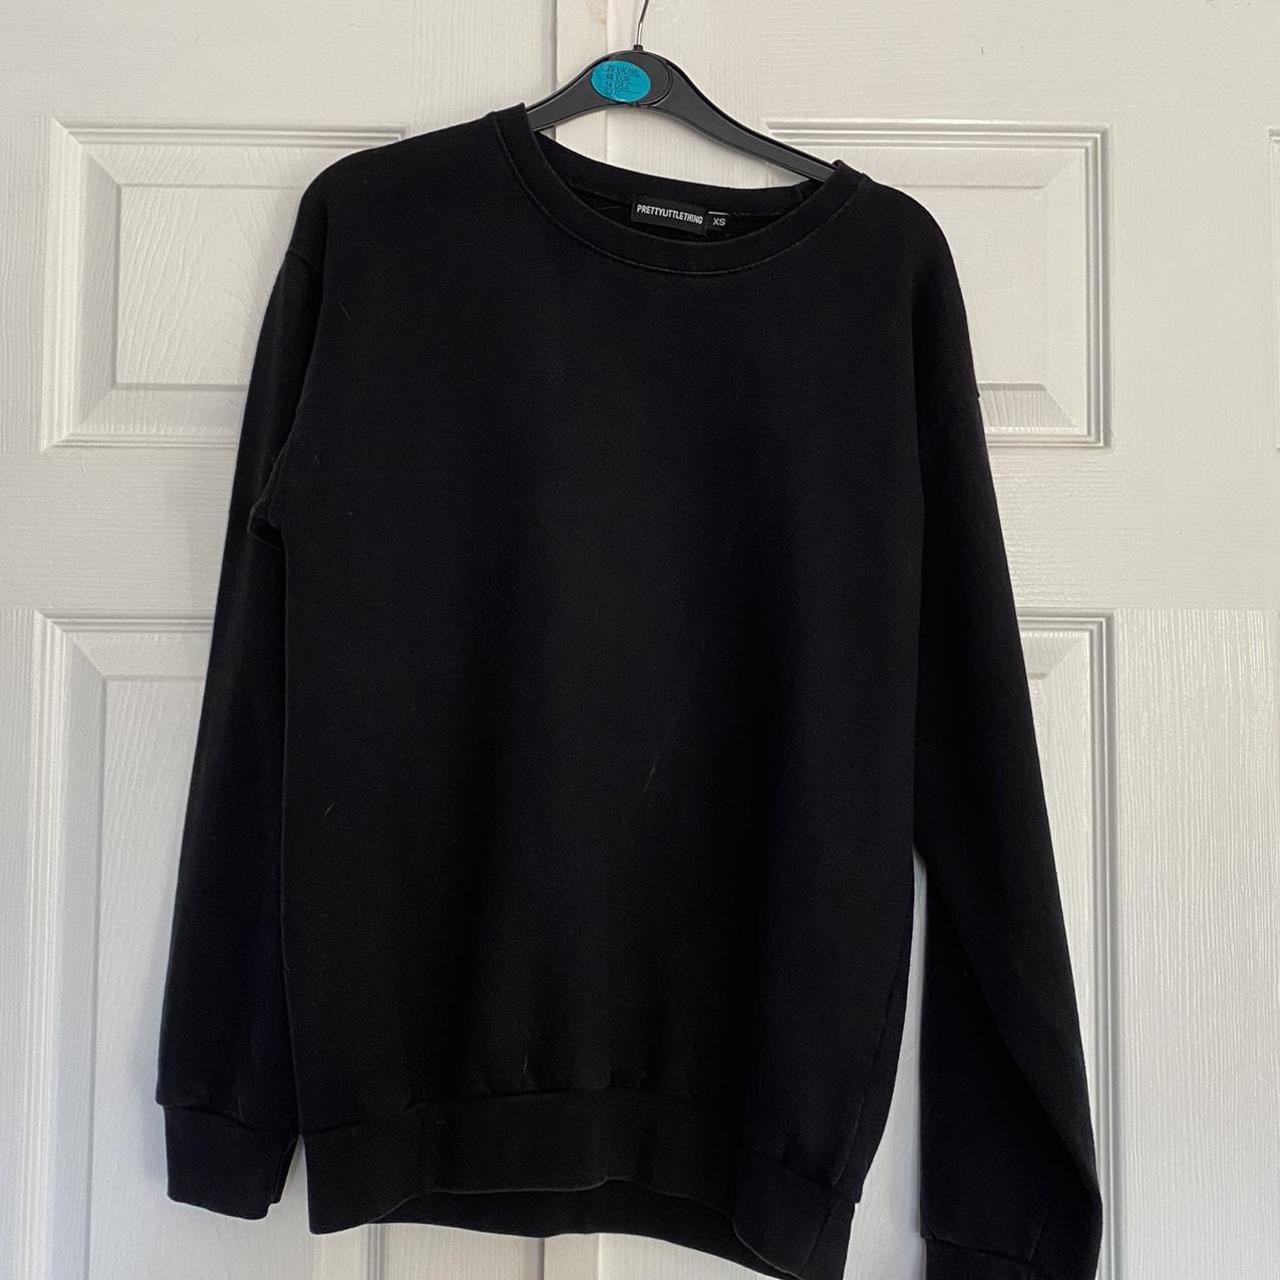 PrettyLittleThing Women's Black Sweatshirt | Depop